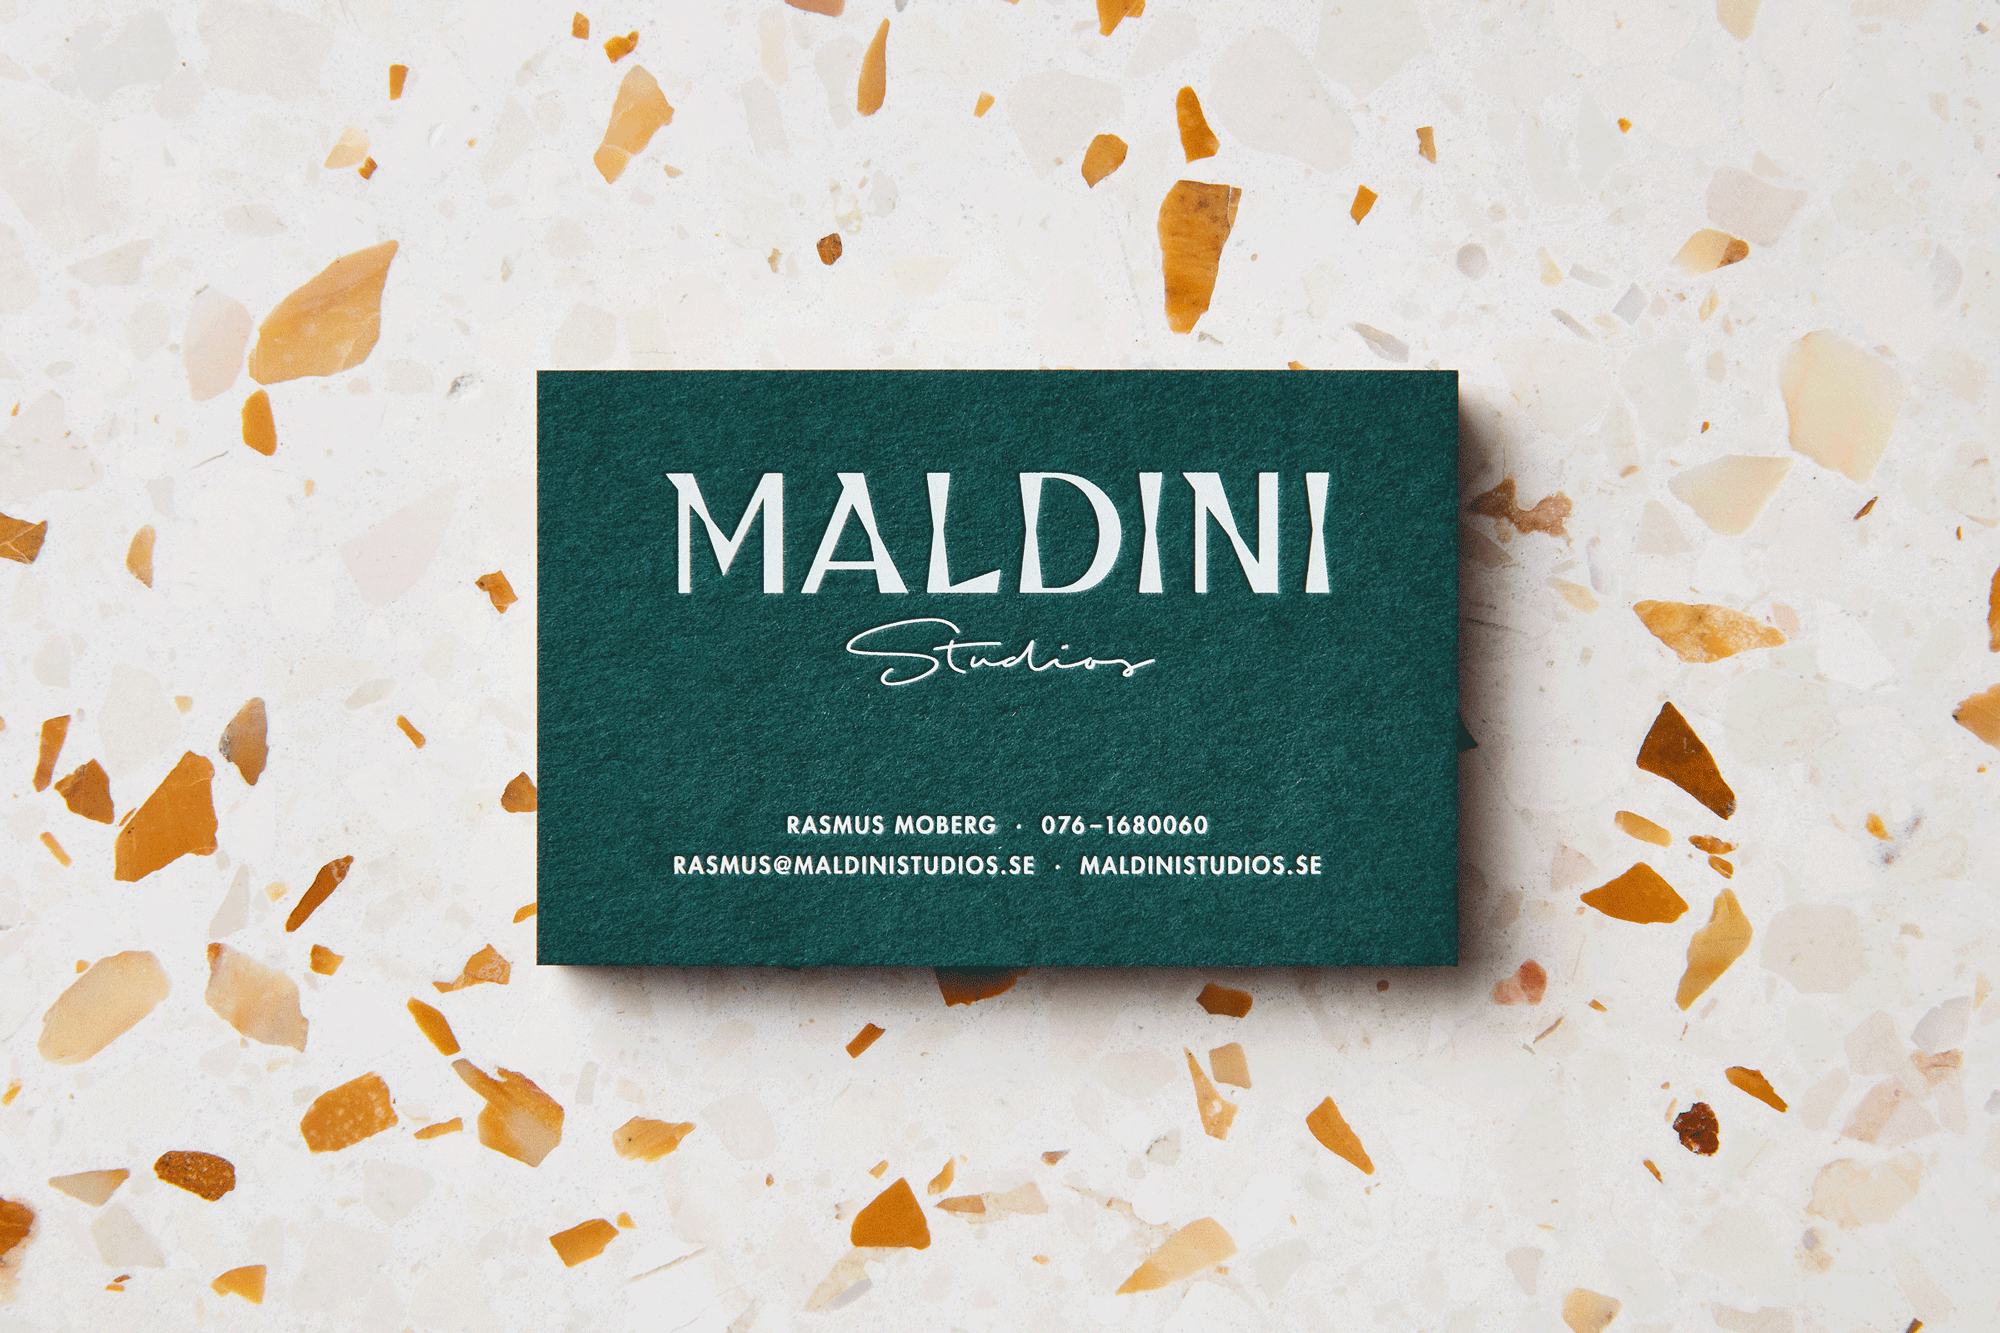 Maldini Studios